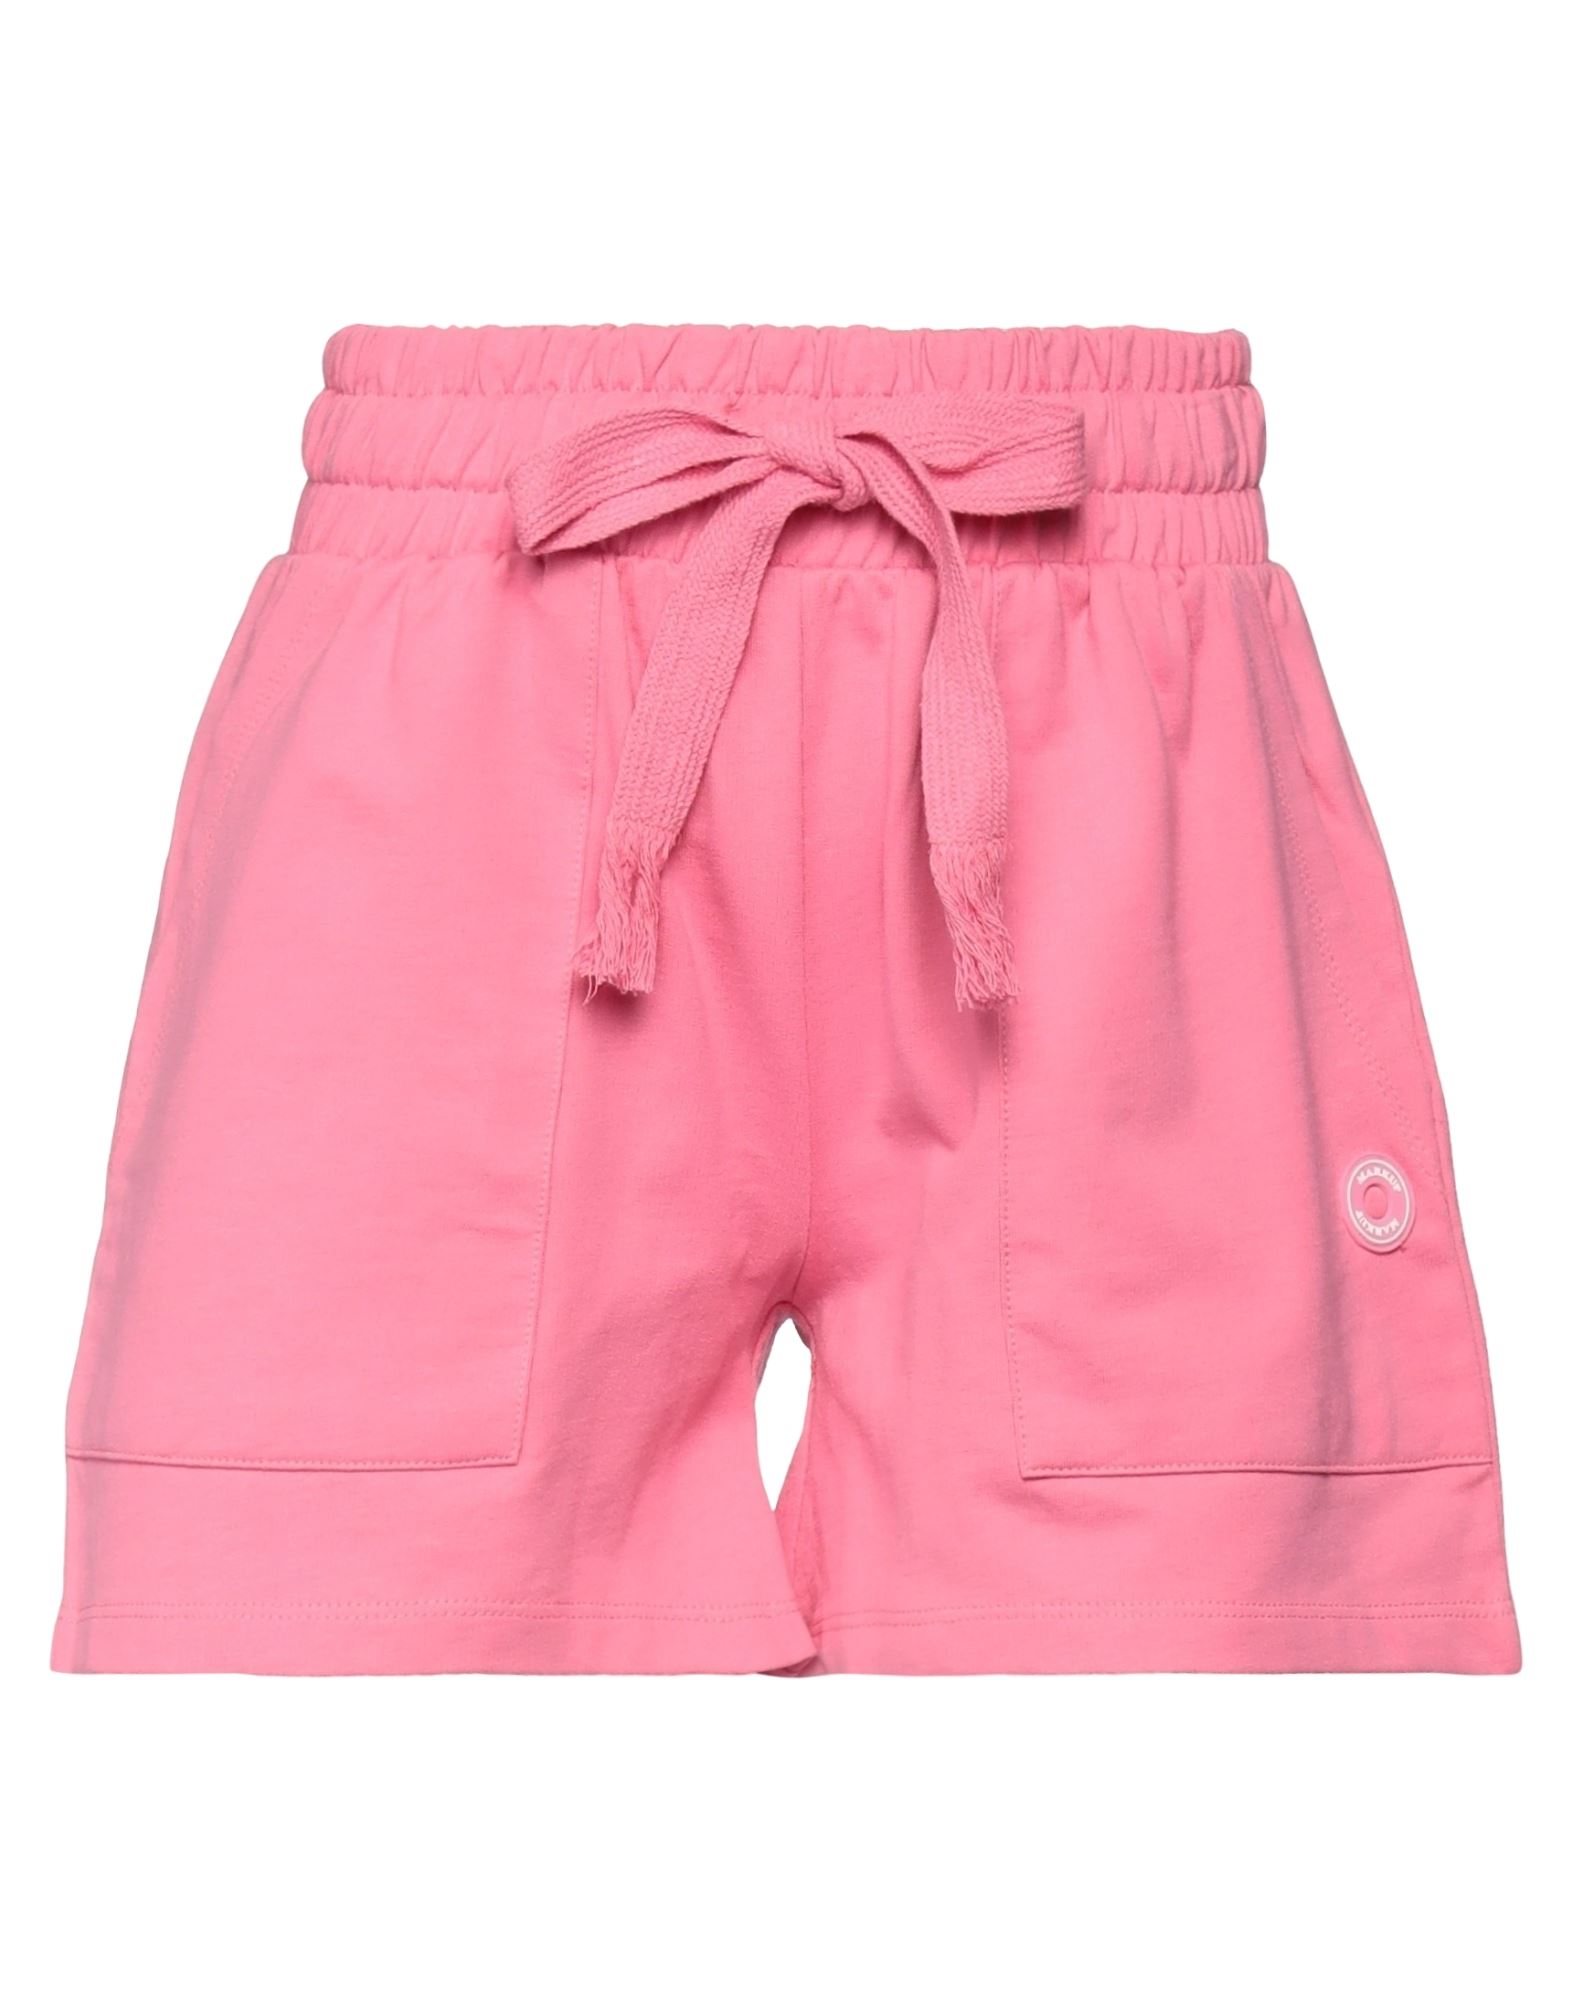 Markup Woman Shorts & Bermuda Shorts Pink Size Xs Cotton